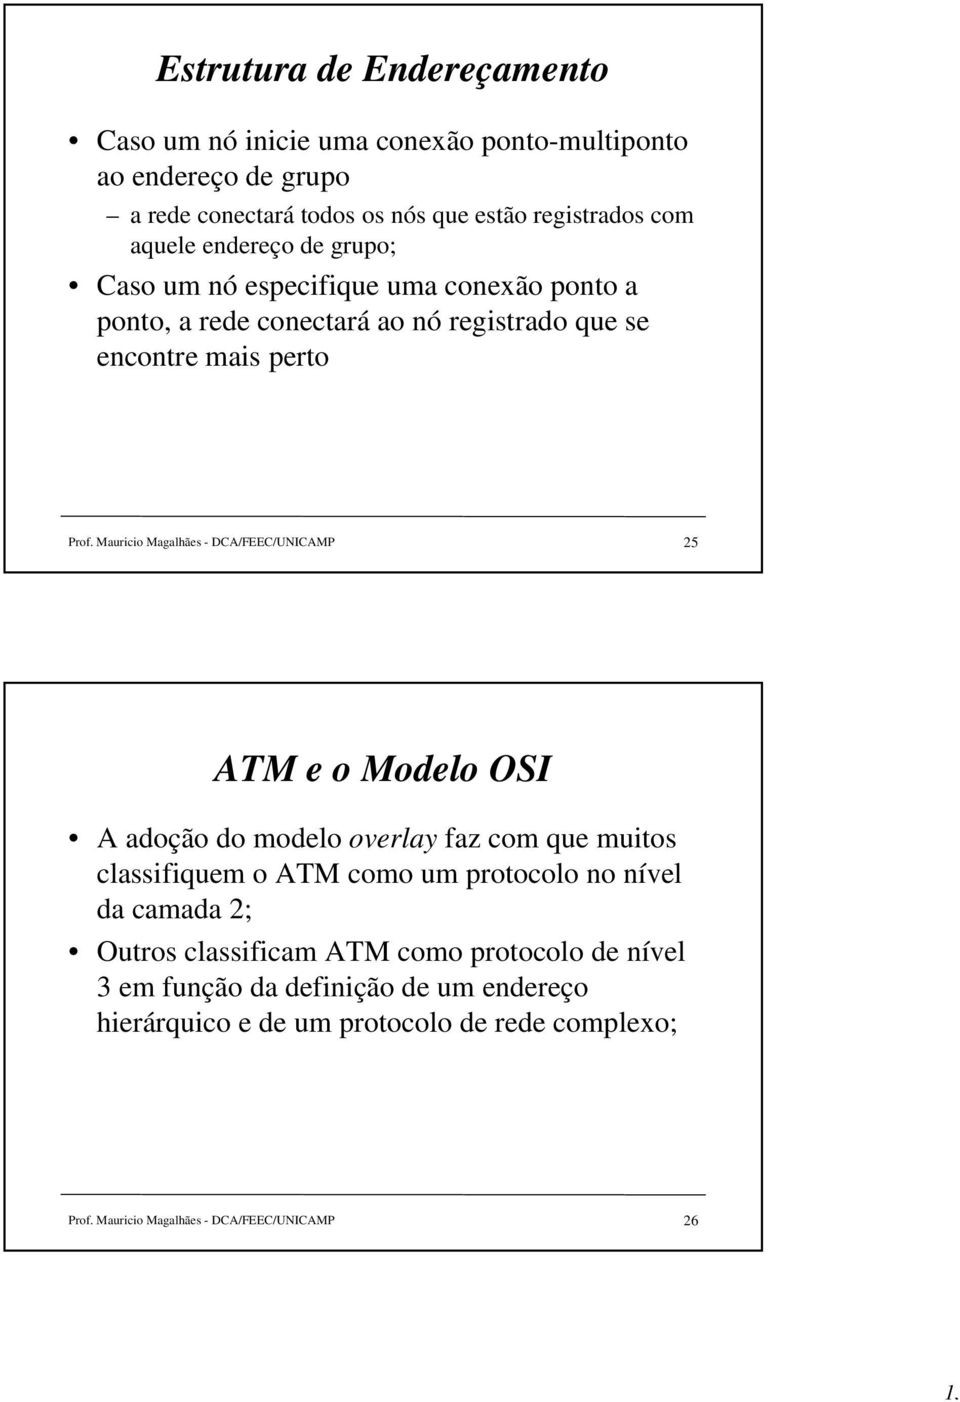 Mauricio Magalhães - DCA/FEEC/UNICAMP 25 ATM e o Modelo OSI A adoção do modelo overlay faz com que muitos classifiquem o ATM como um protocolo no nível da